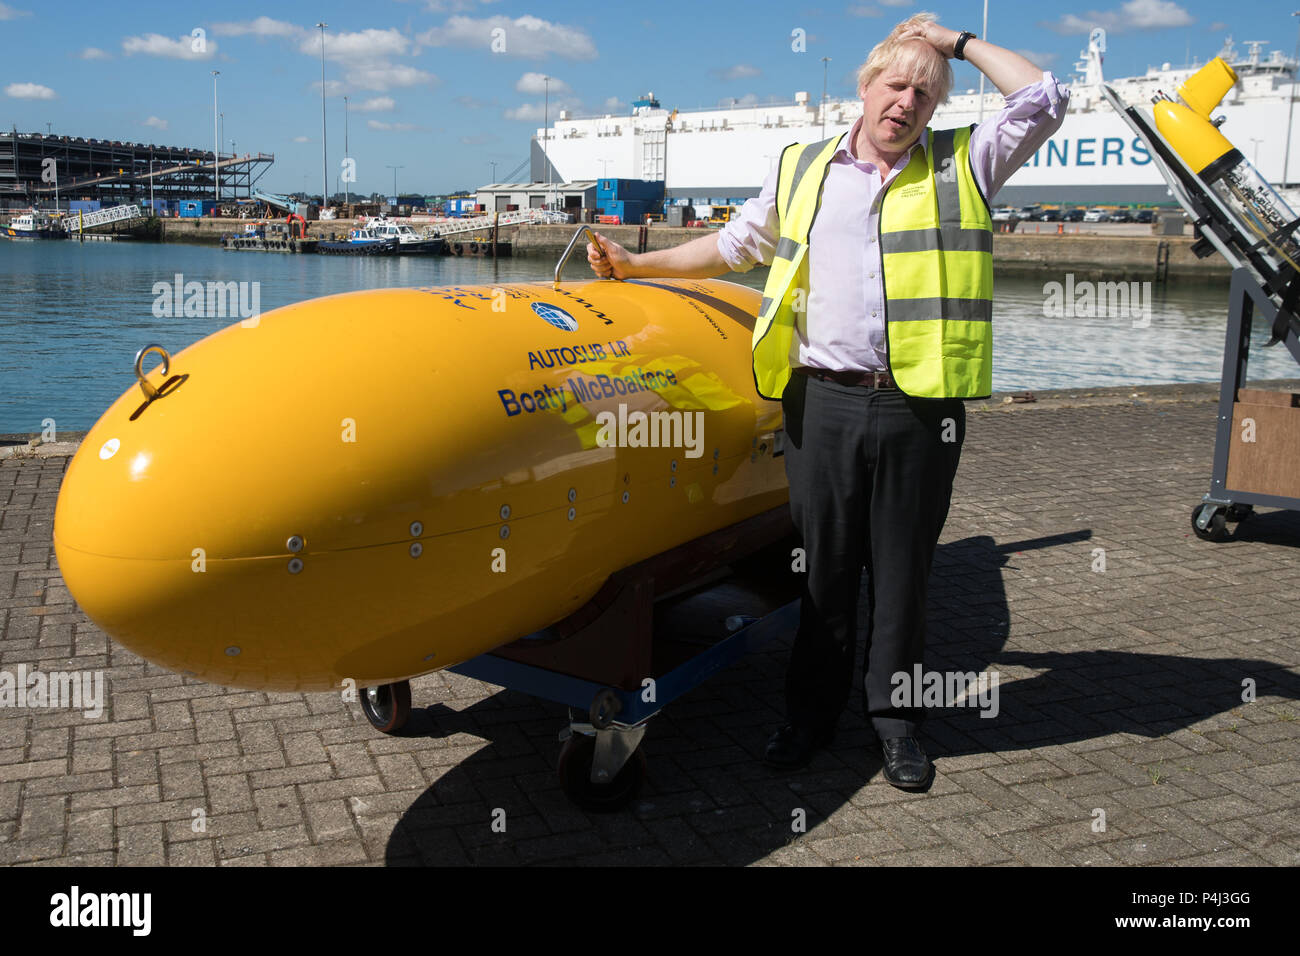 Segretario di Stato per gli affari esteri, Boris Johnson, con Boaty McBoatface, un veicolo autonomo sottomarino utilizzato per la ricerca scientifica, durante la sua visita alla National Oceanography Centre di Southampton in vista del prossimo FCO oceani strategia. Foto Stock